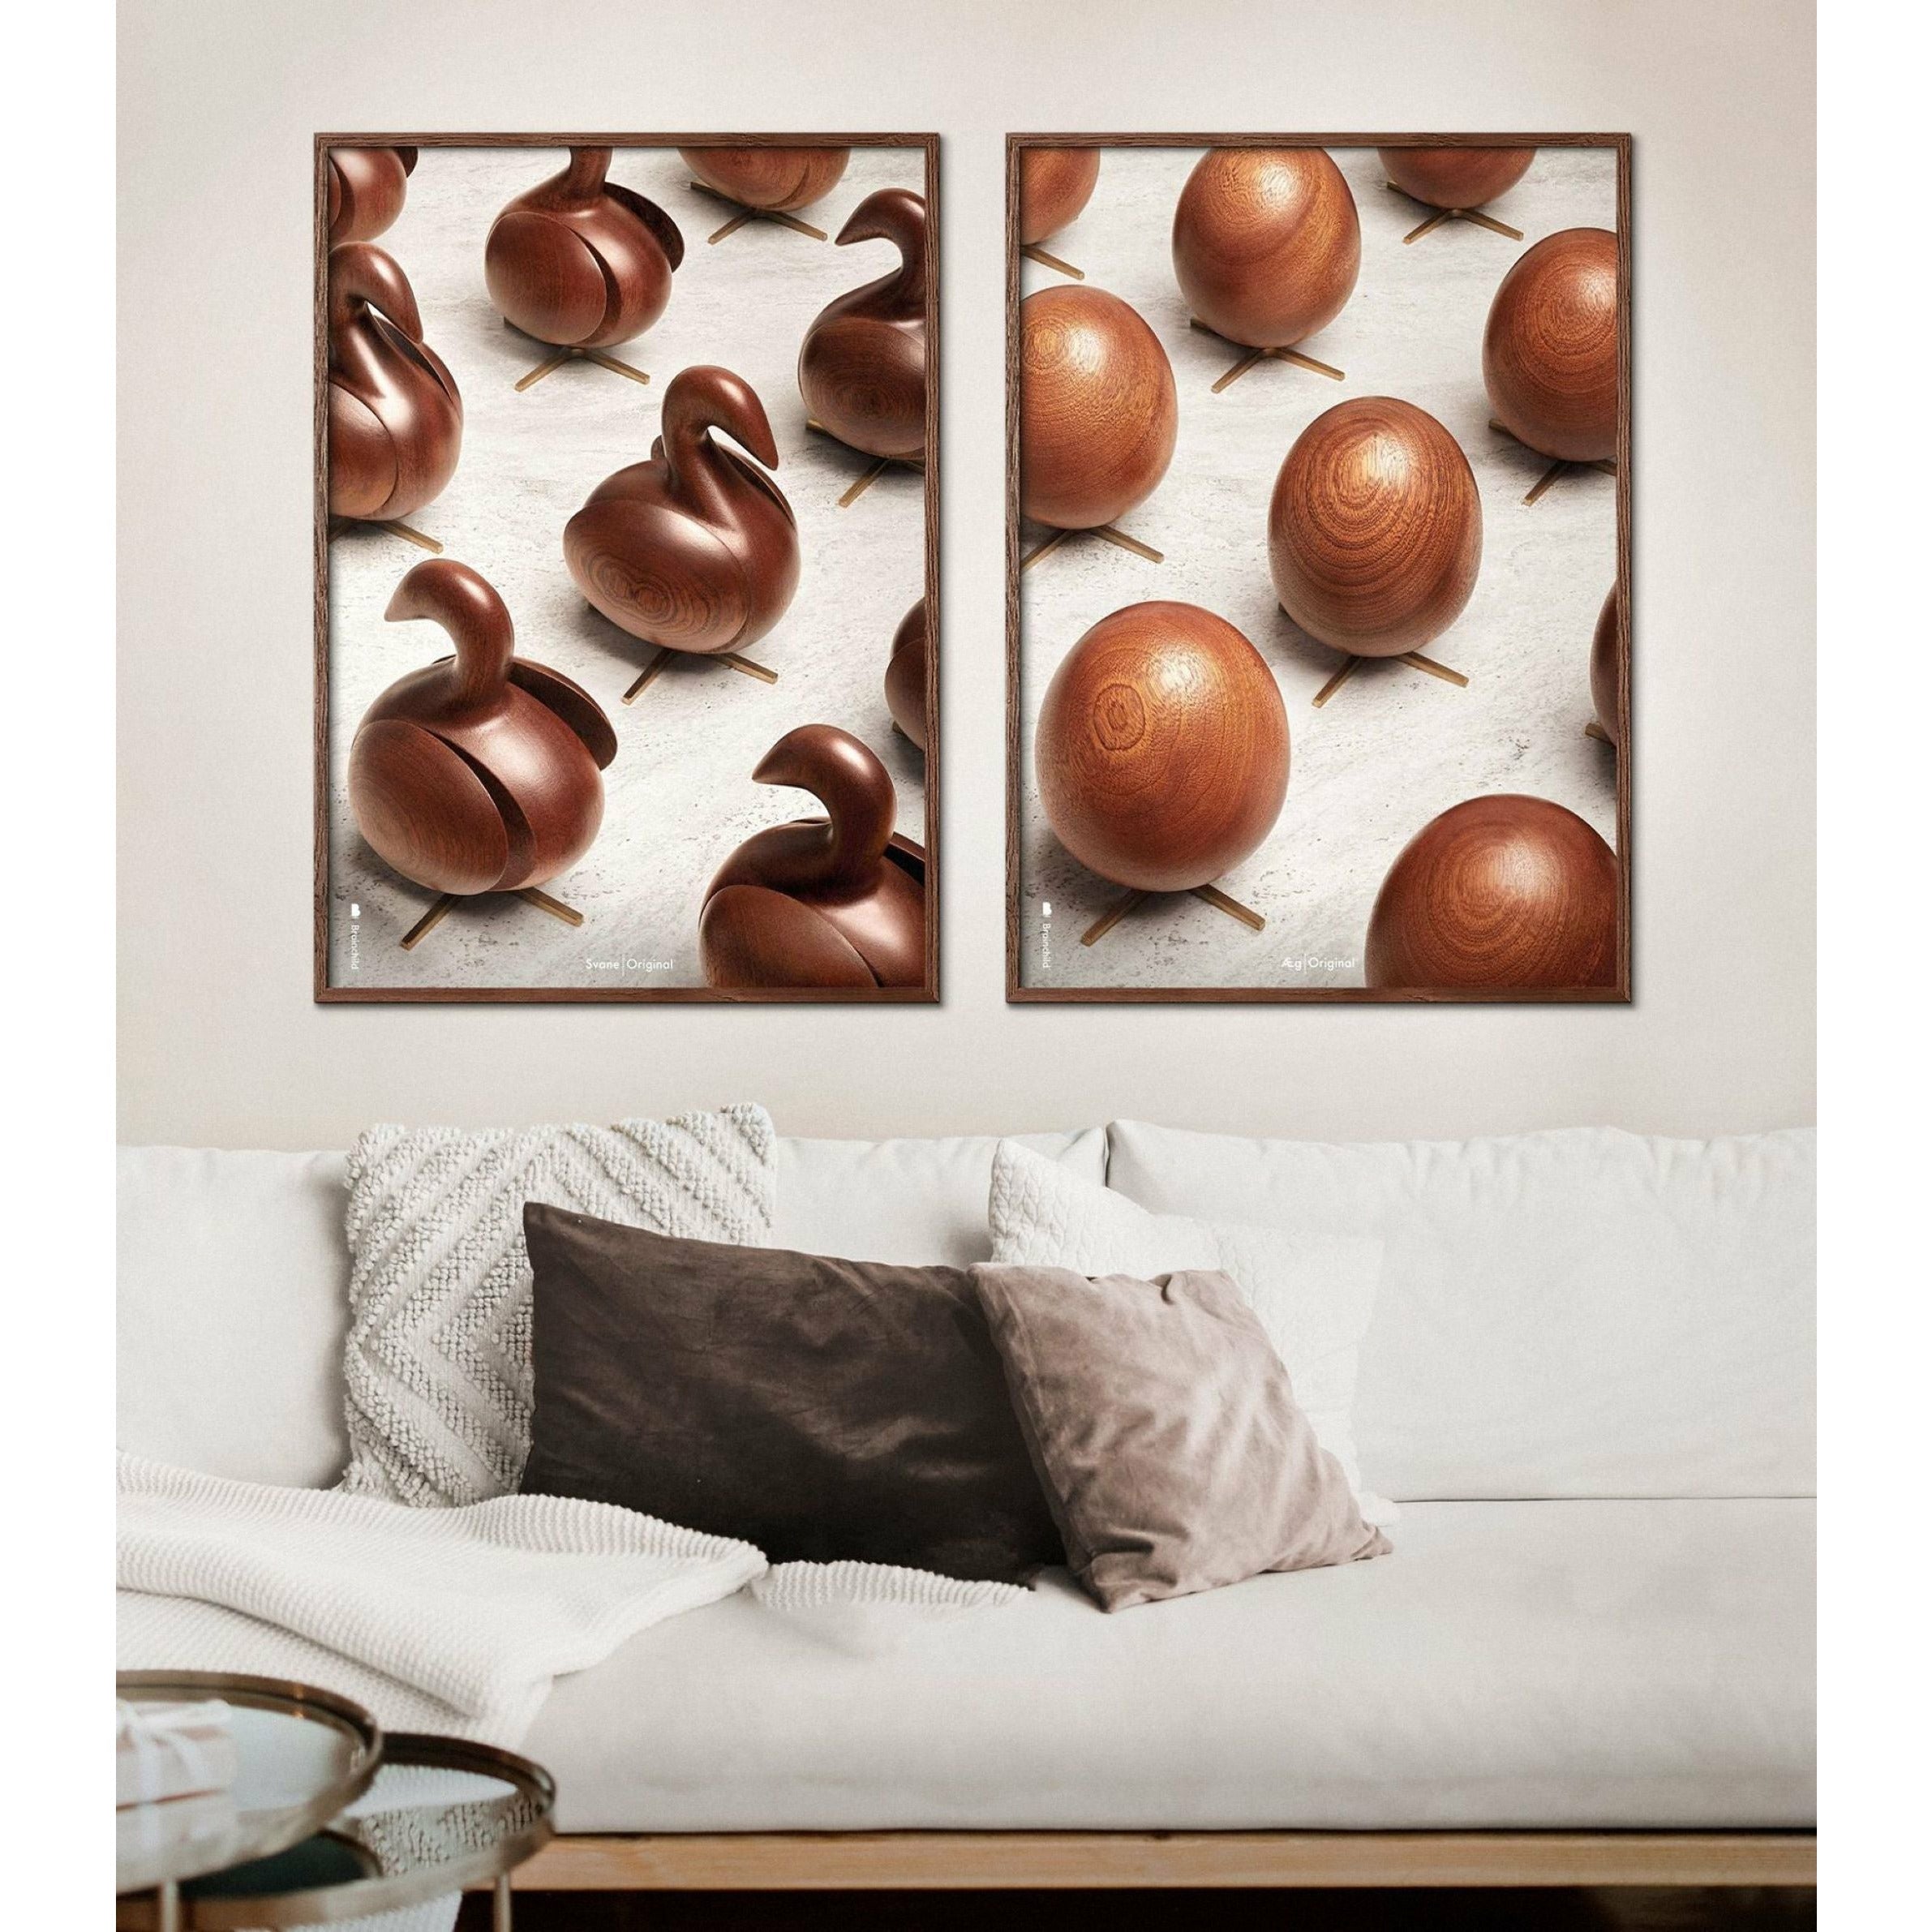 Poster per sfilata di uova di prima cosa, telaio in legno chiaro, 30x40 cm